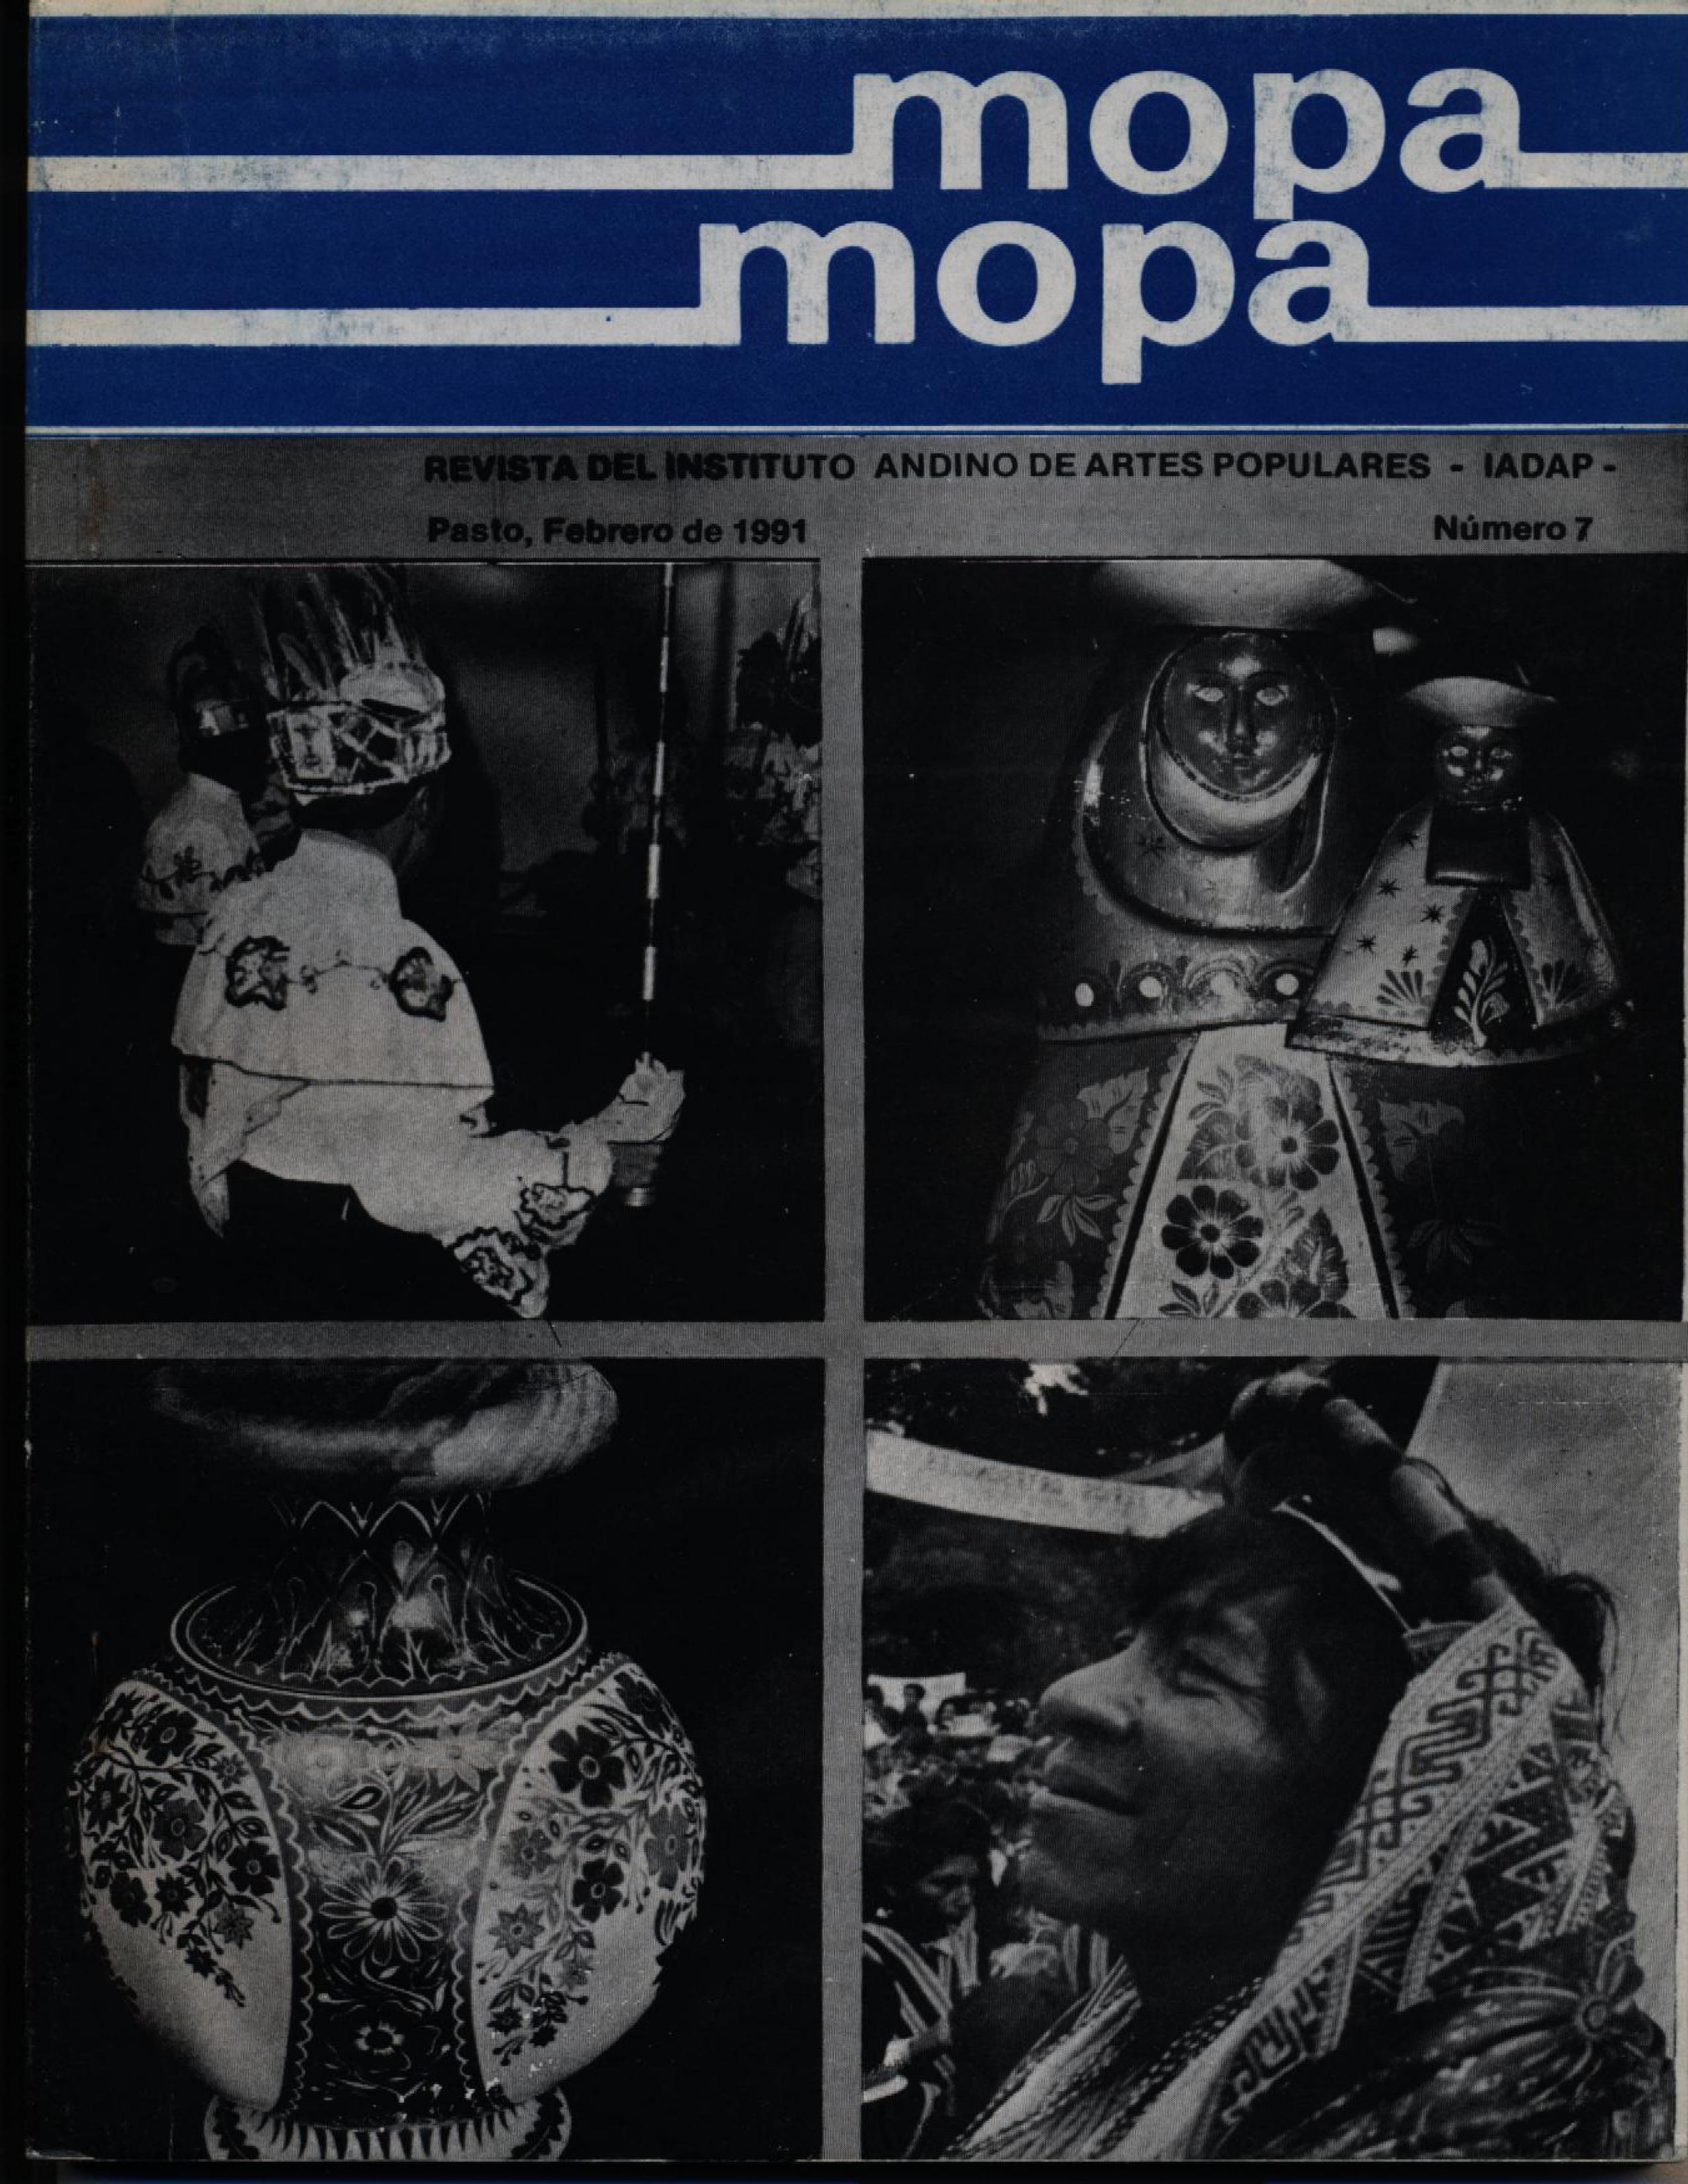 					Ver Vol. 1 Núm. 7 (1991): Revista Mopa Mopa 7
				